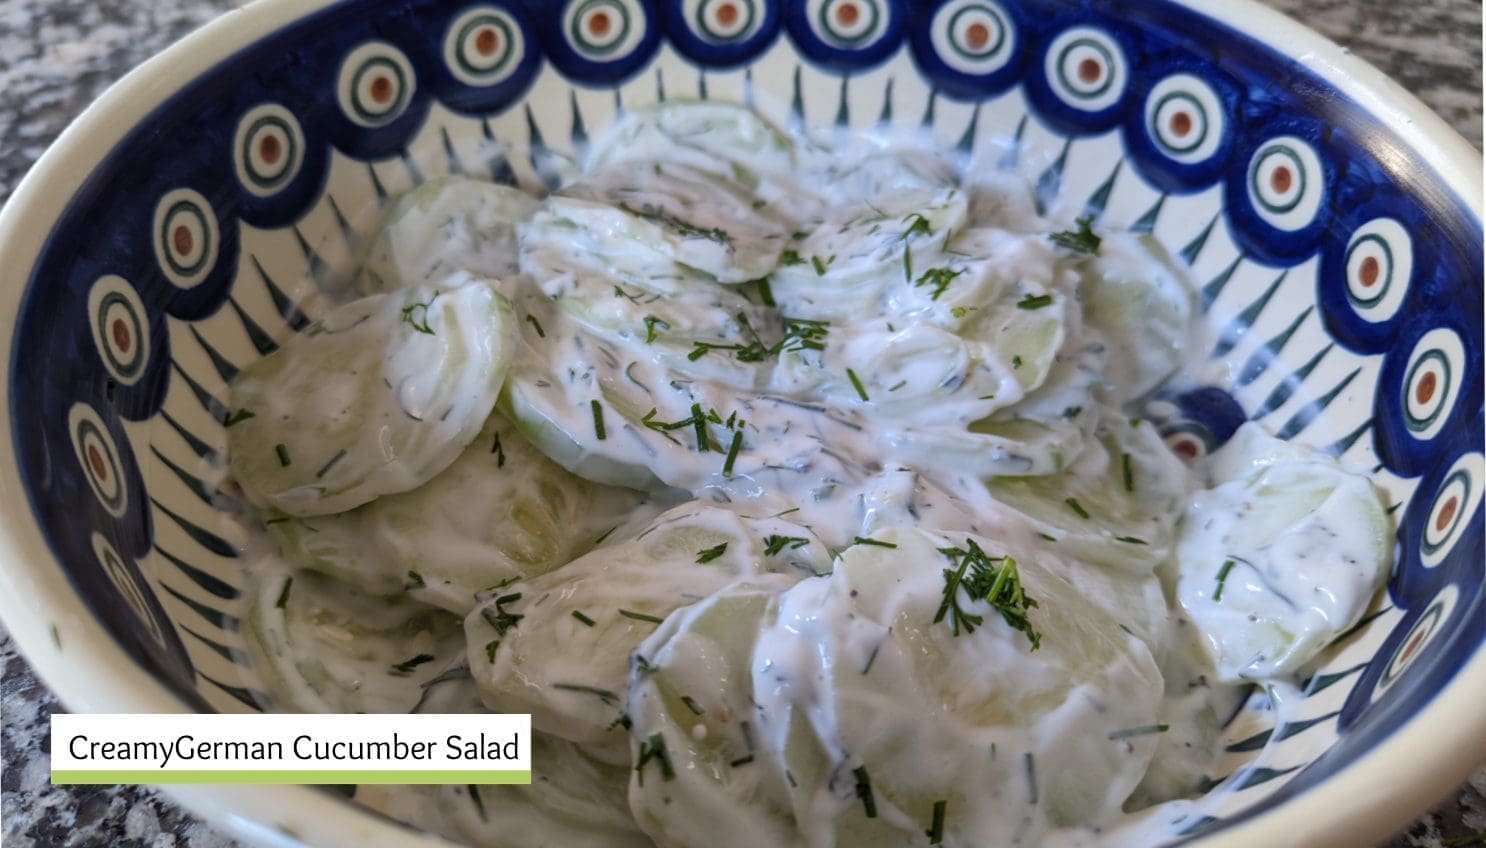 Creamy German Cucumber Salad- A Tasty Side Dish or Salad